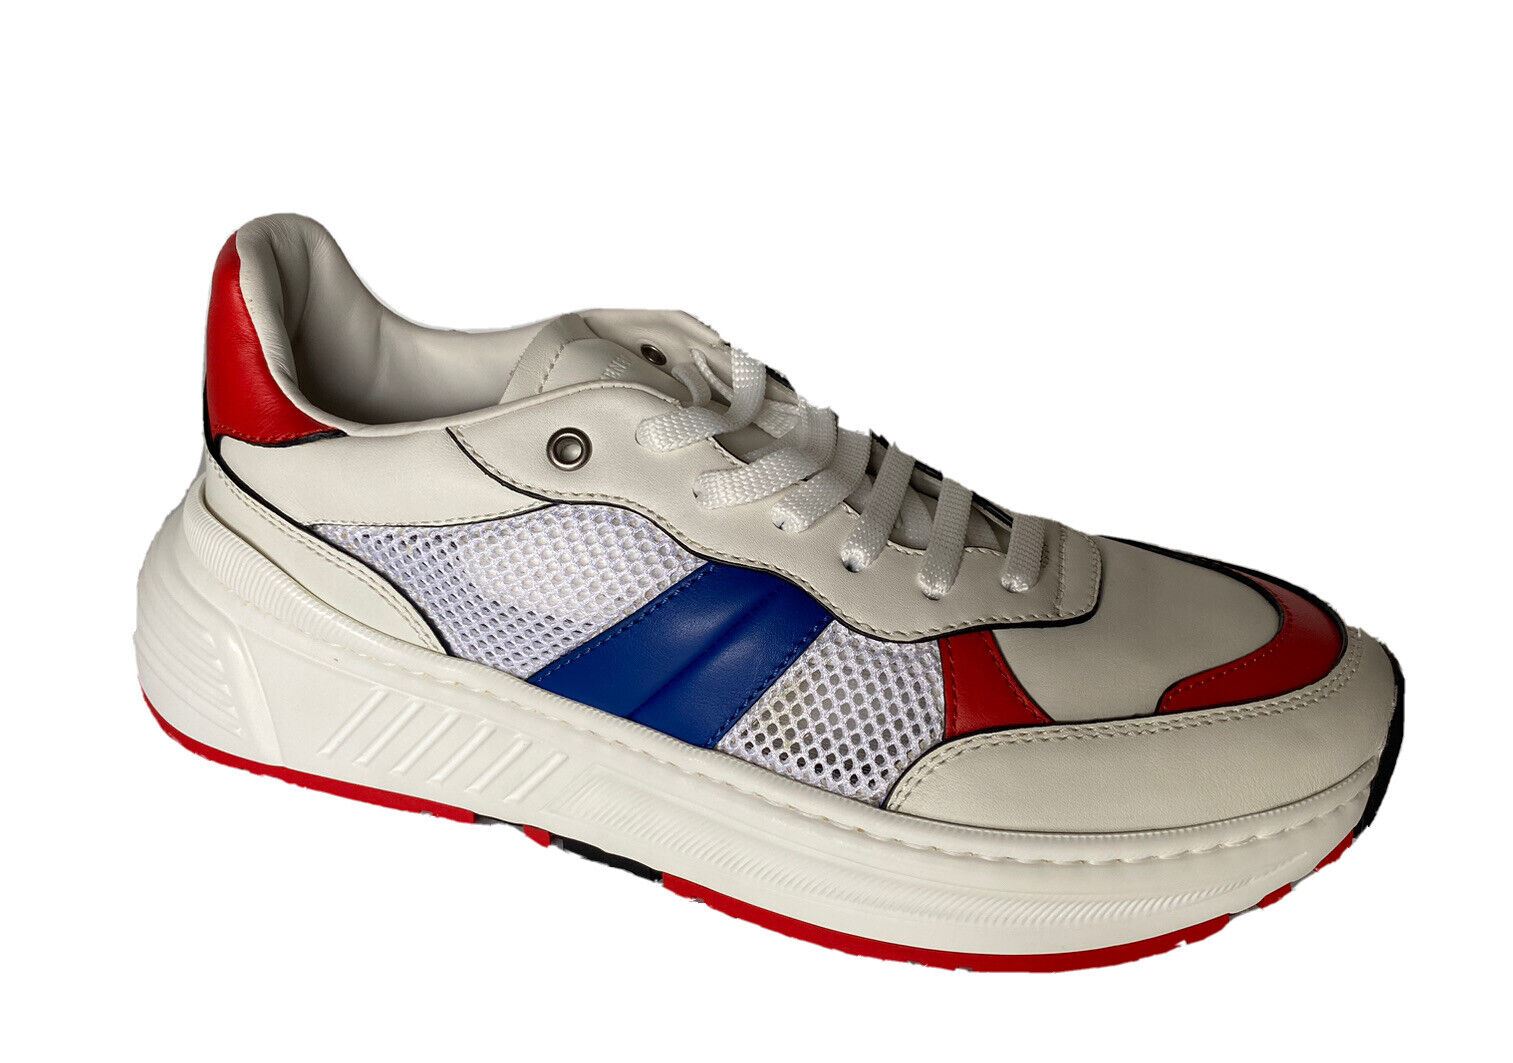 NIB Bottega Veneta Herren-Sneaker aus Leder und Mesh, Weiß/Rot/Blau, 10 US 565646 9080